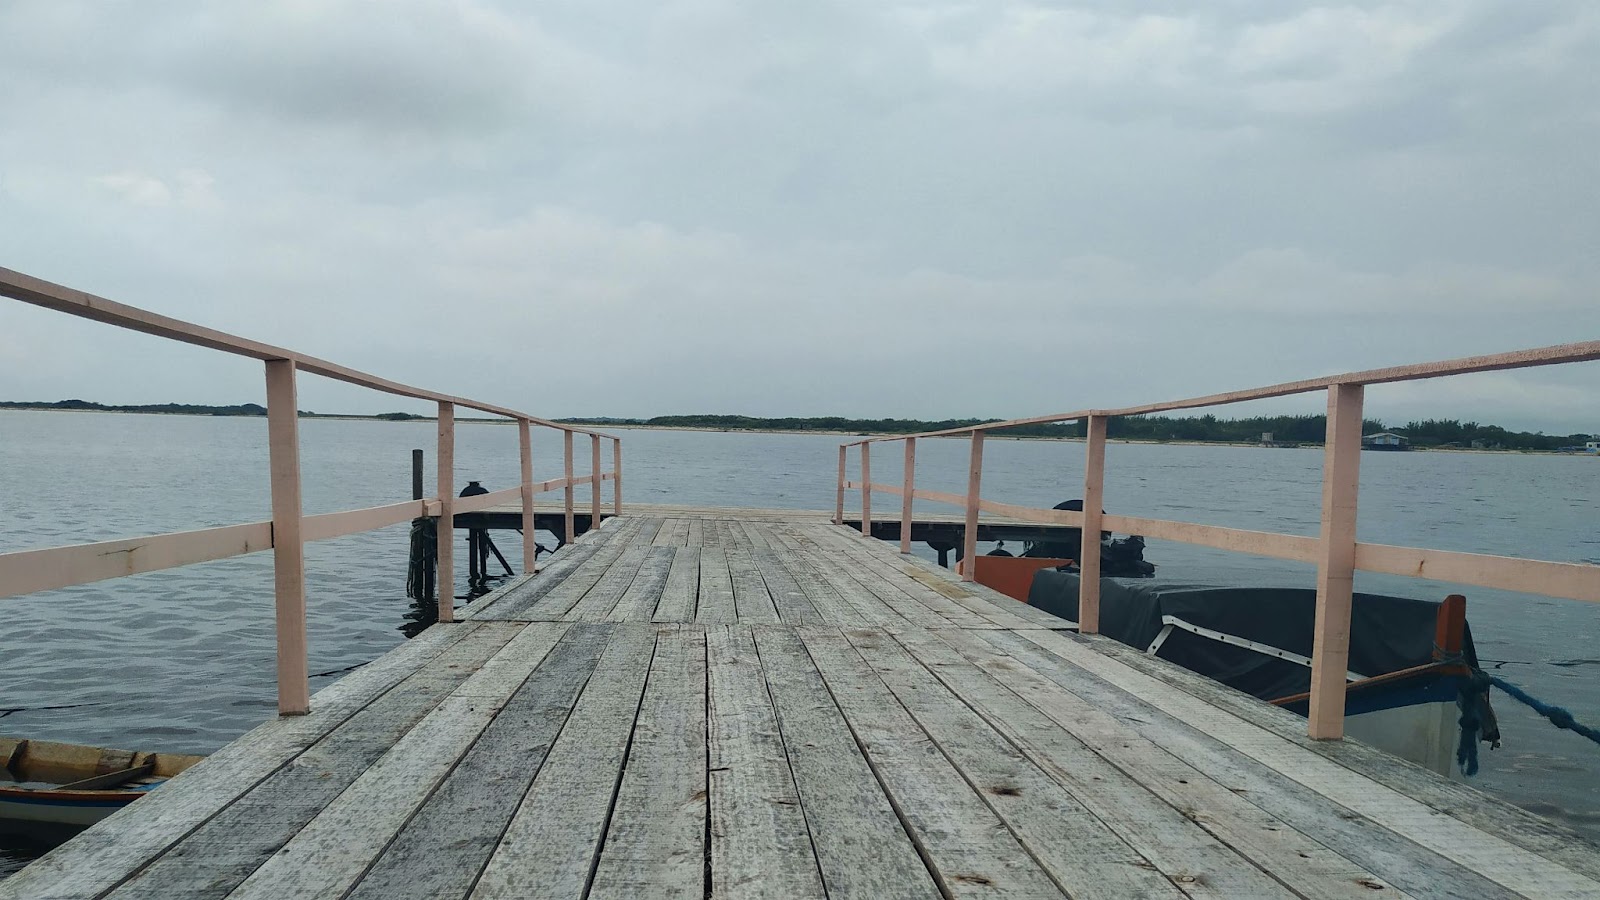 Pier de madeira centralizado na imagem, com a lagoa em segundo plano. Dia nublado e cinza.